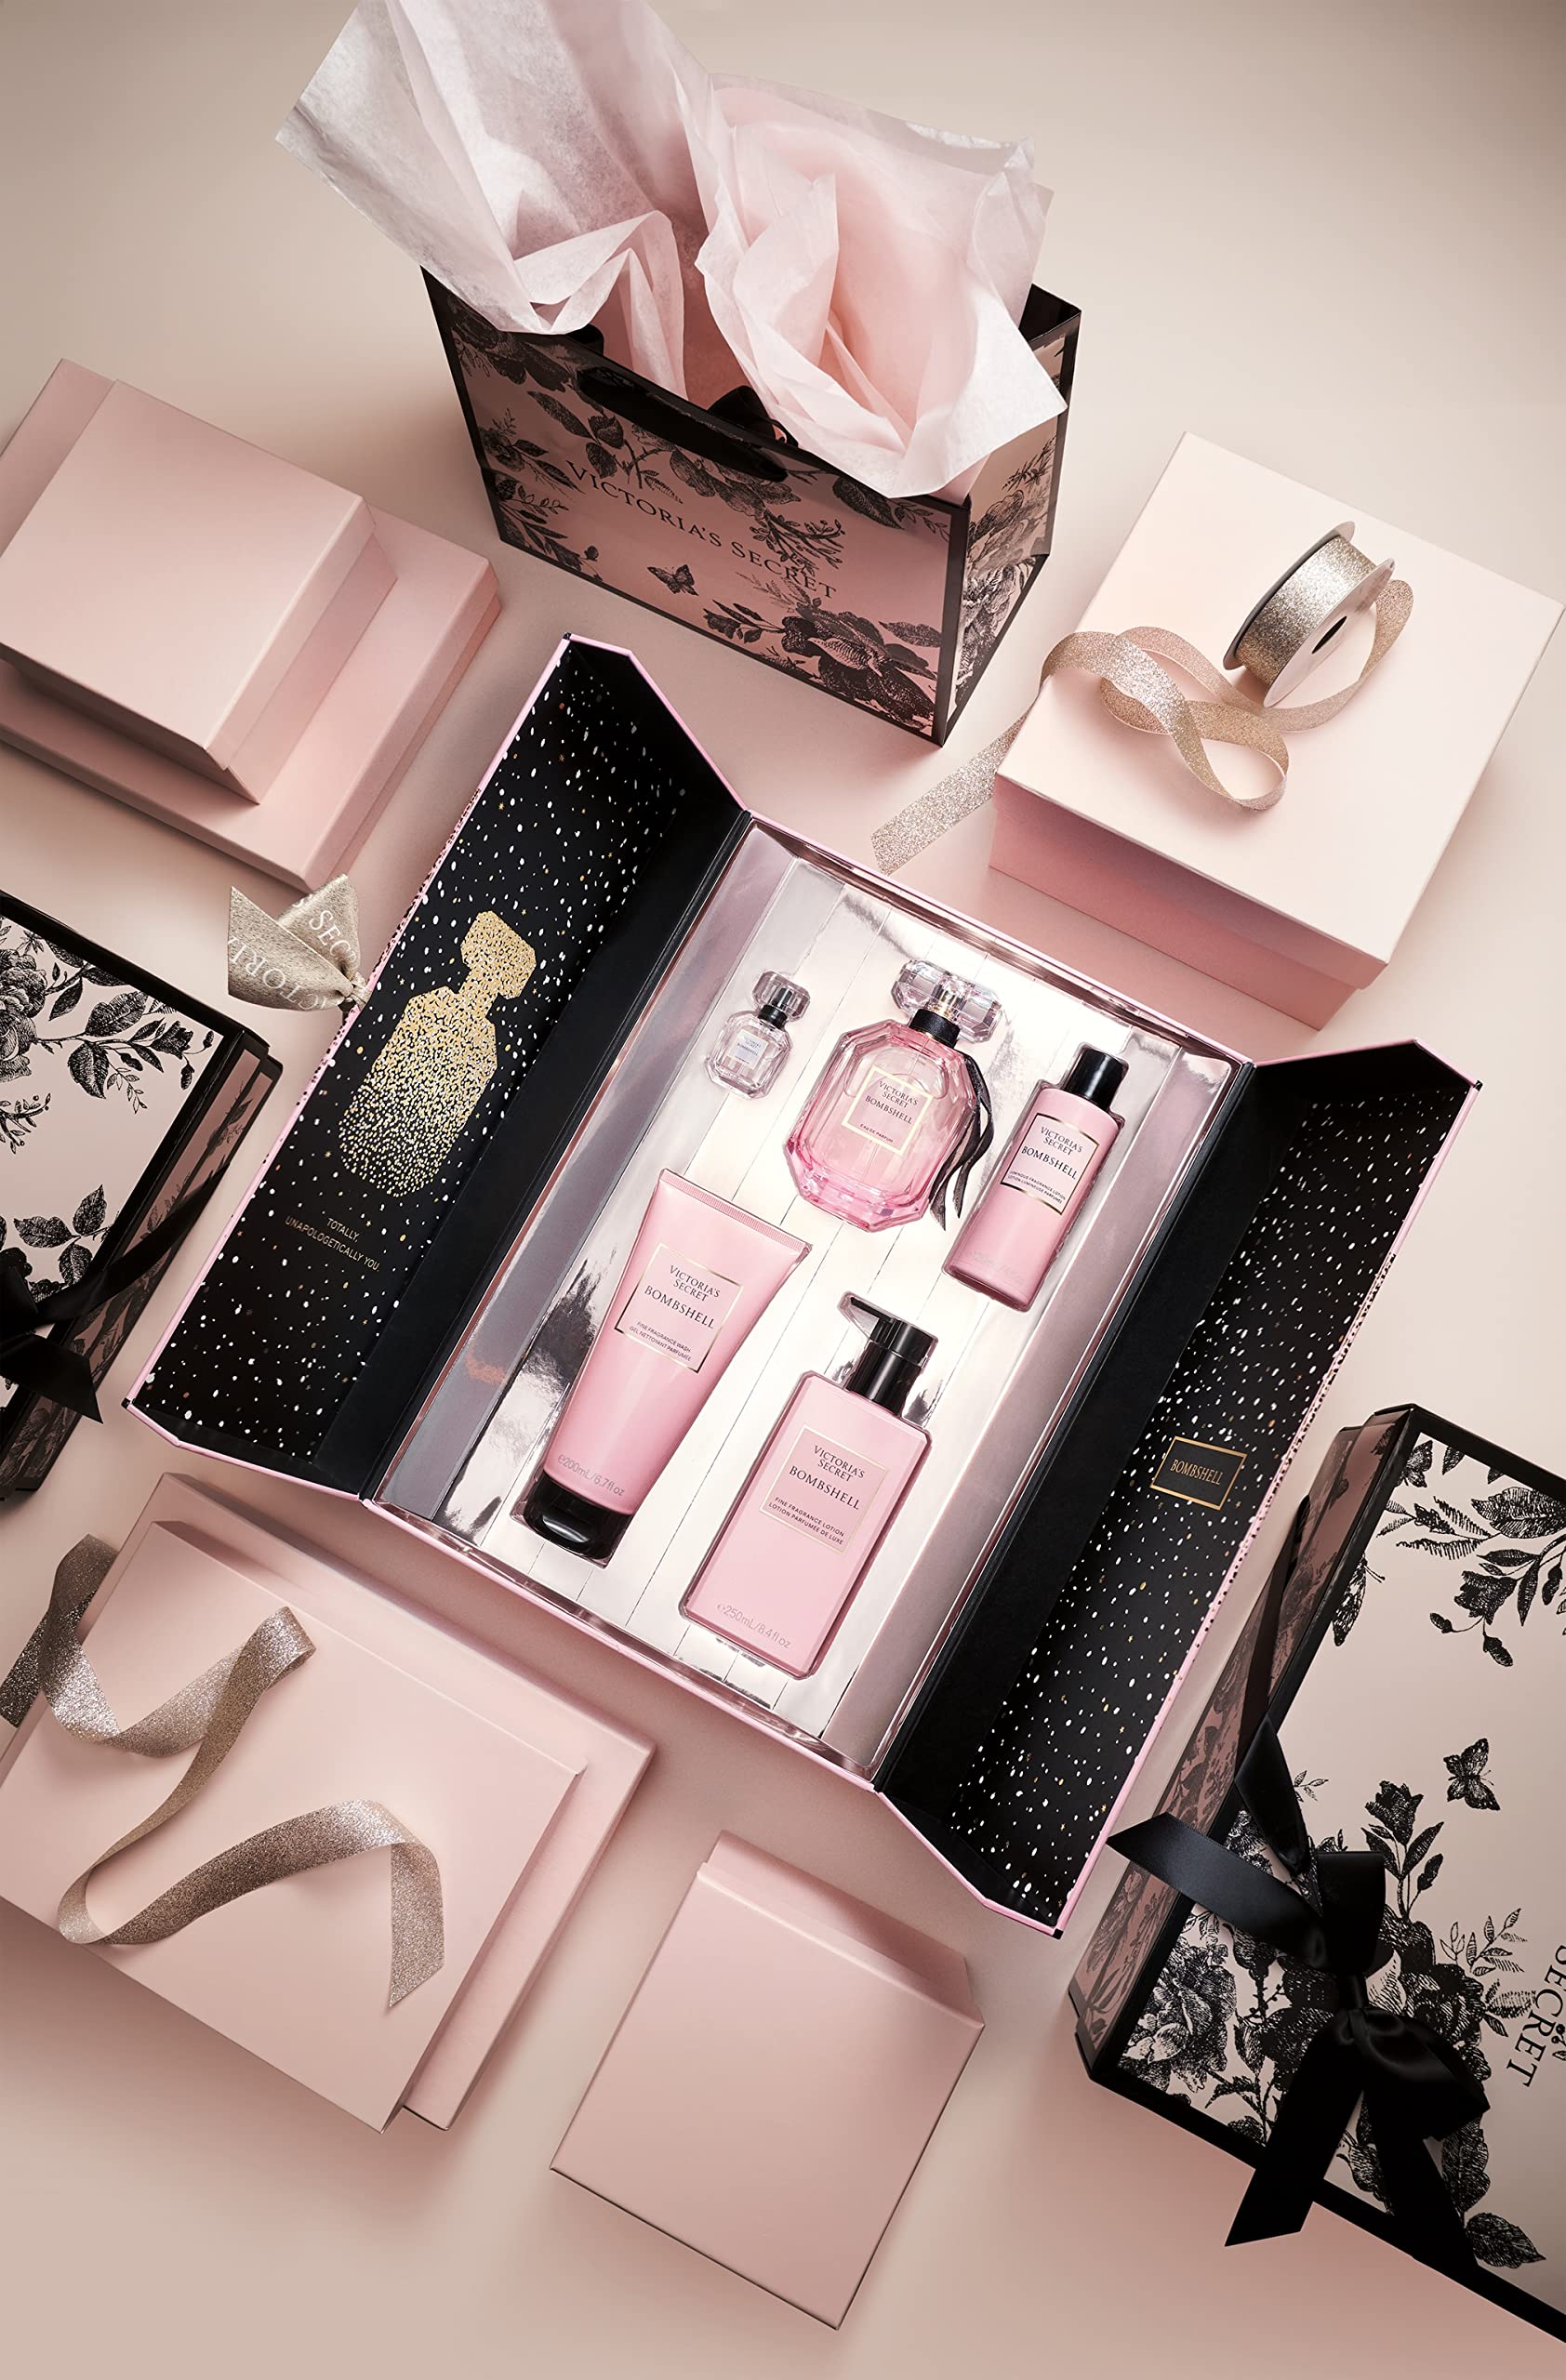 Victoria's Secret Bombshell Eau de Parfum 5 Piece Gift Set: 3.4 oz. Mini Eau de Parfum, Body Wash, Body Lotion, & Luminous Body Lotion